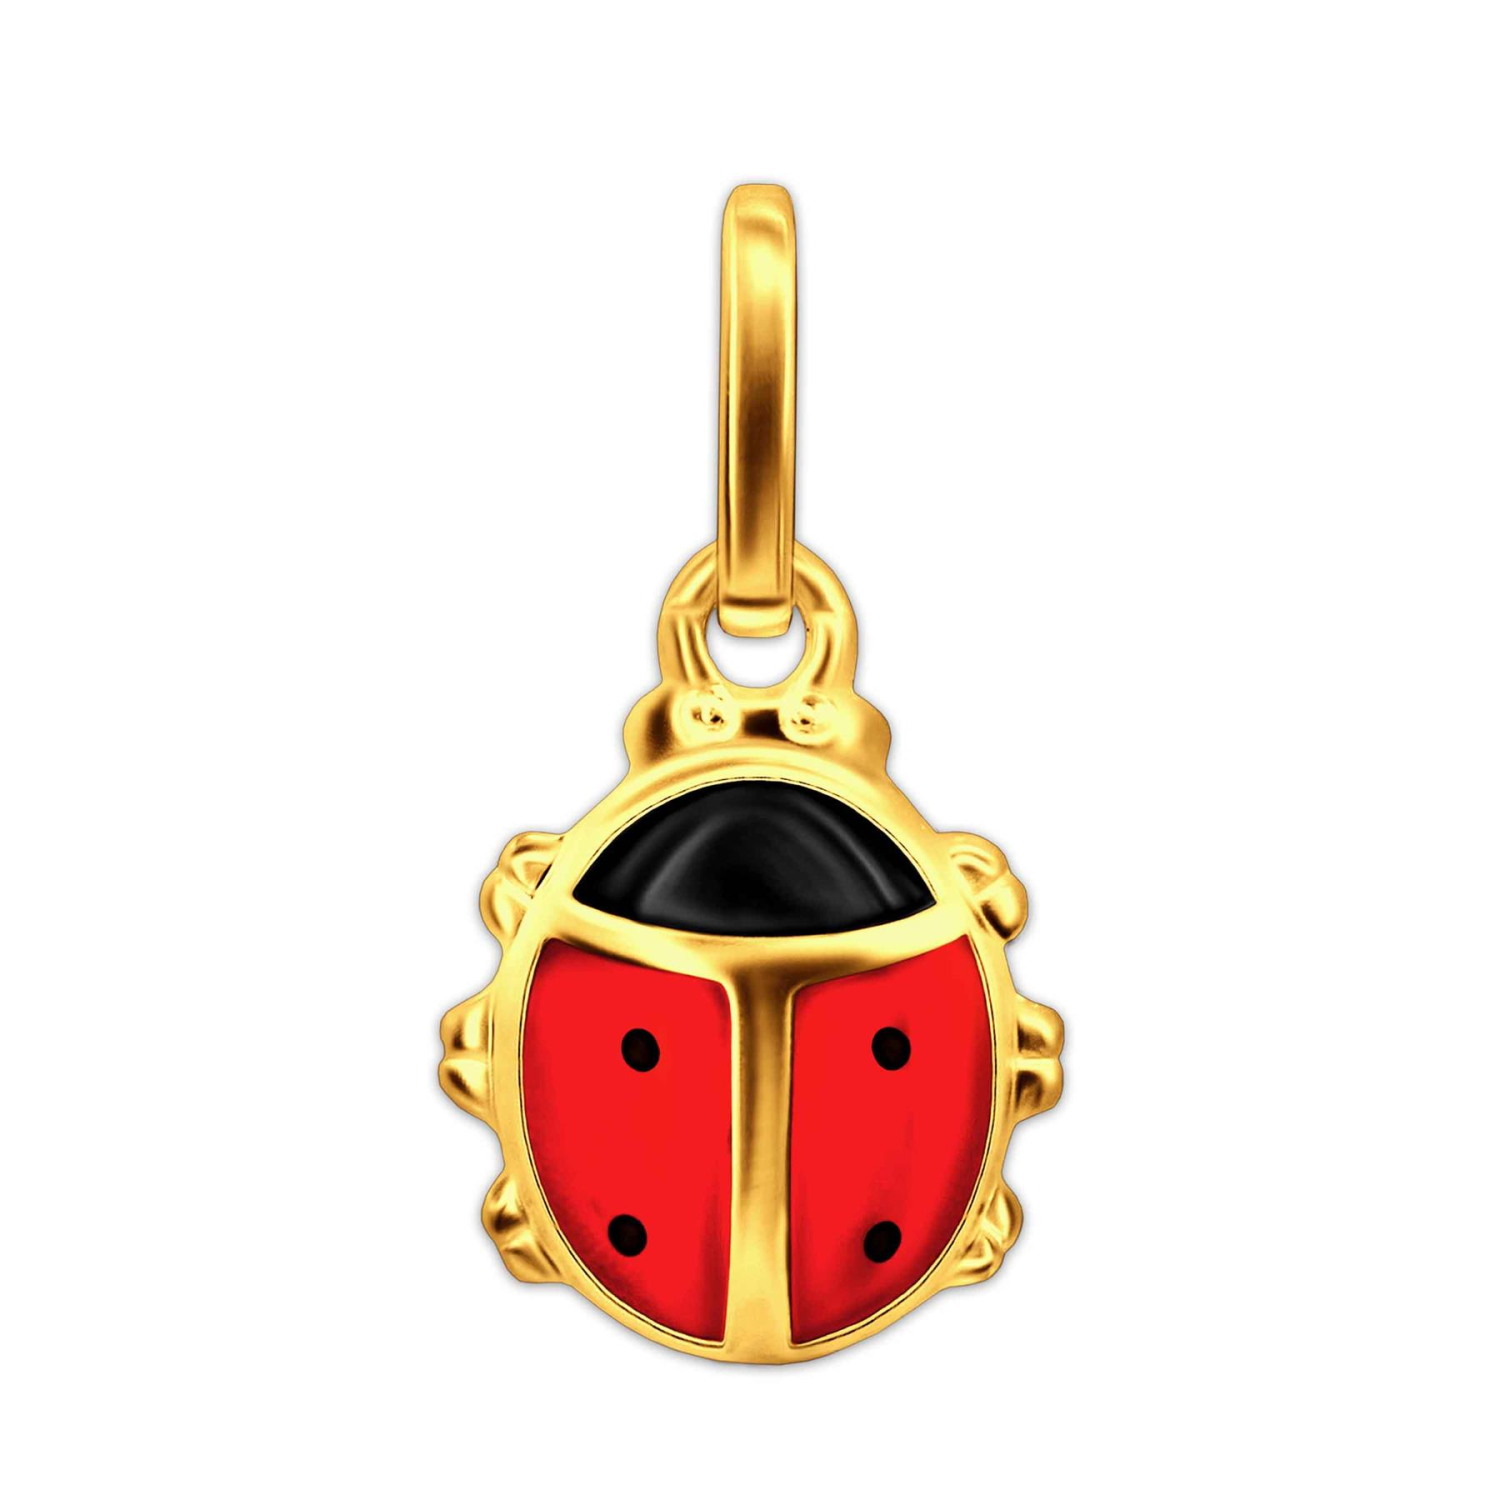 Goldener Marienkäfer rot und schwarz lackiert glänzend 333 GOLD 8 KARAT